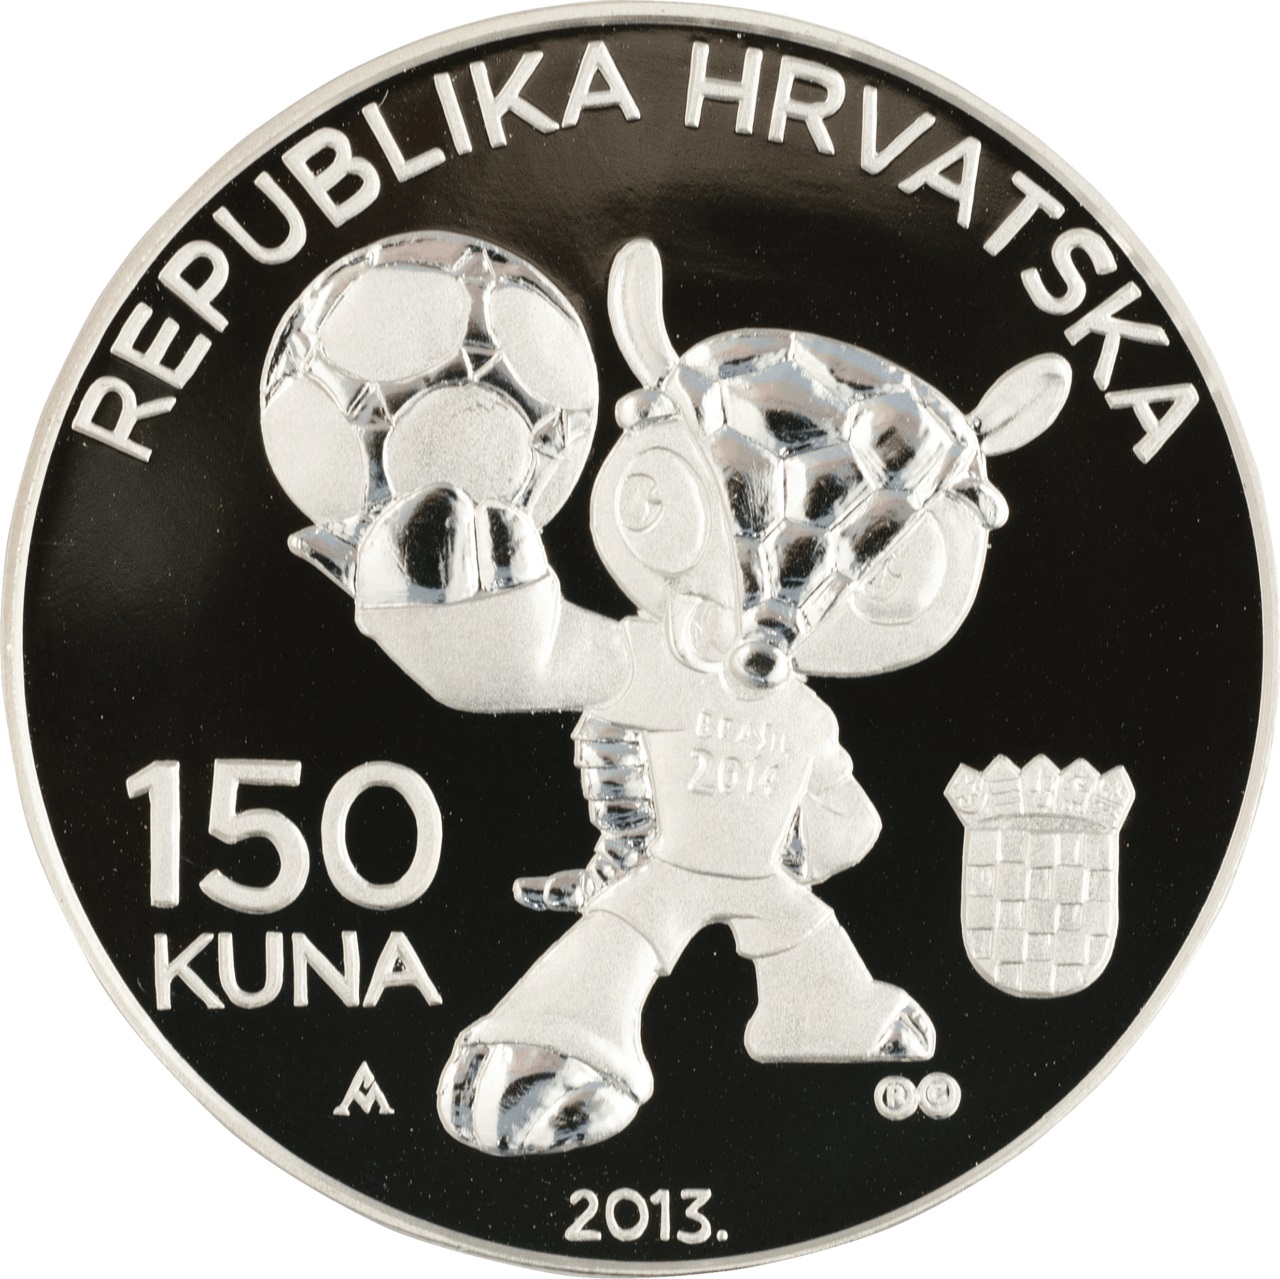 HR 150 Kuna 2013